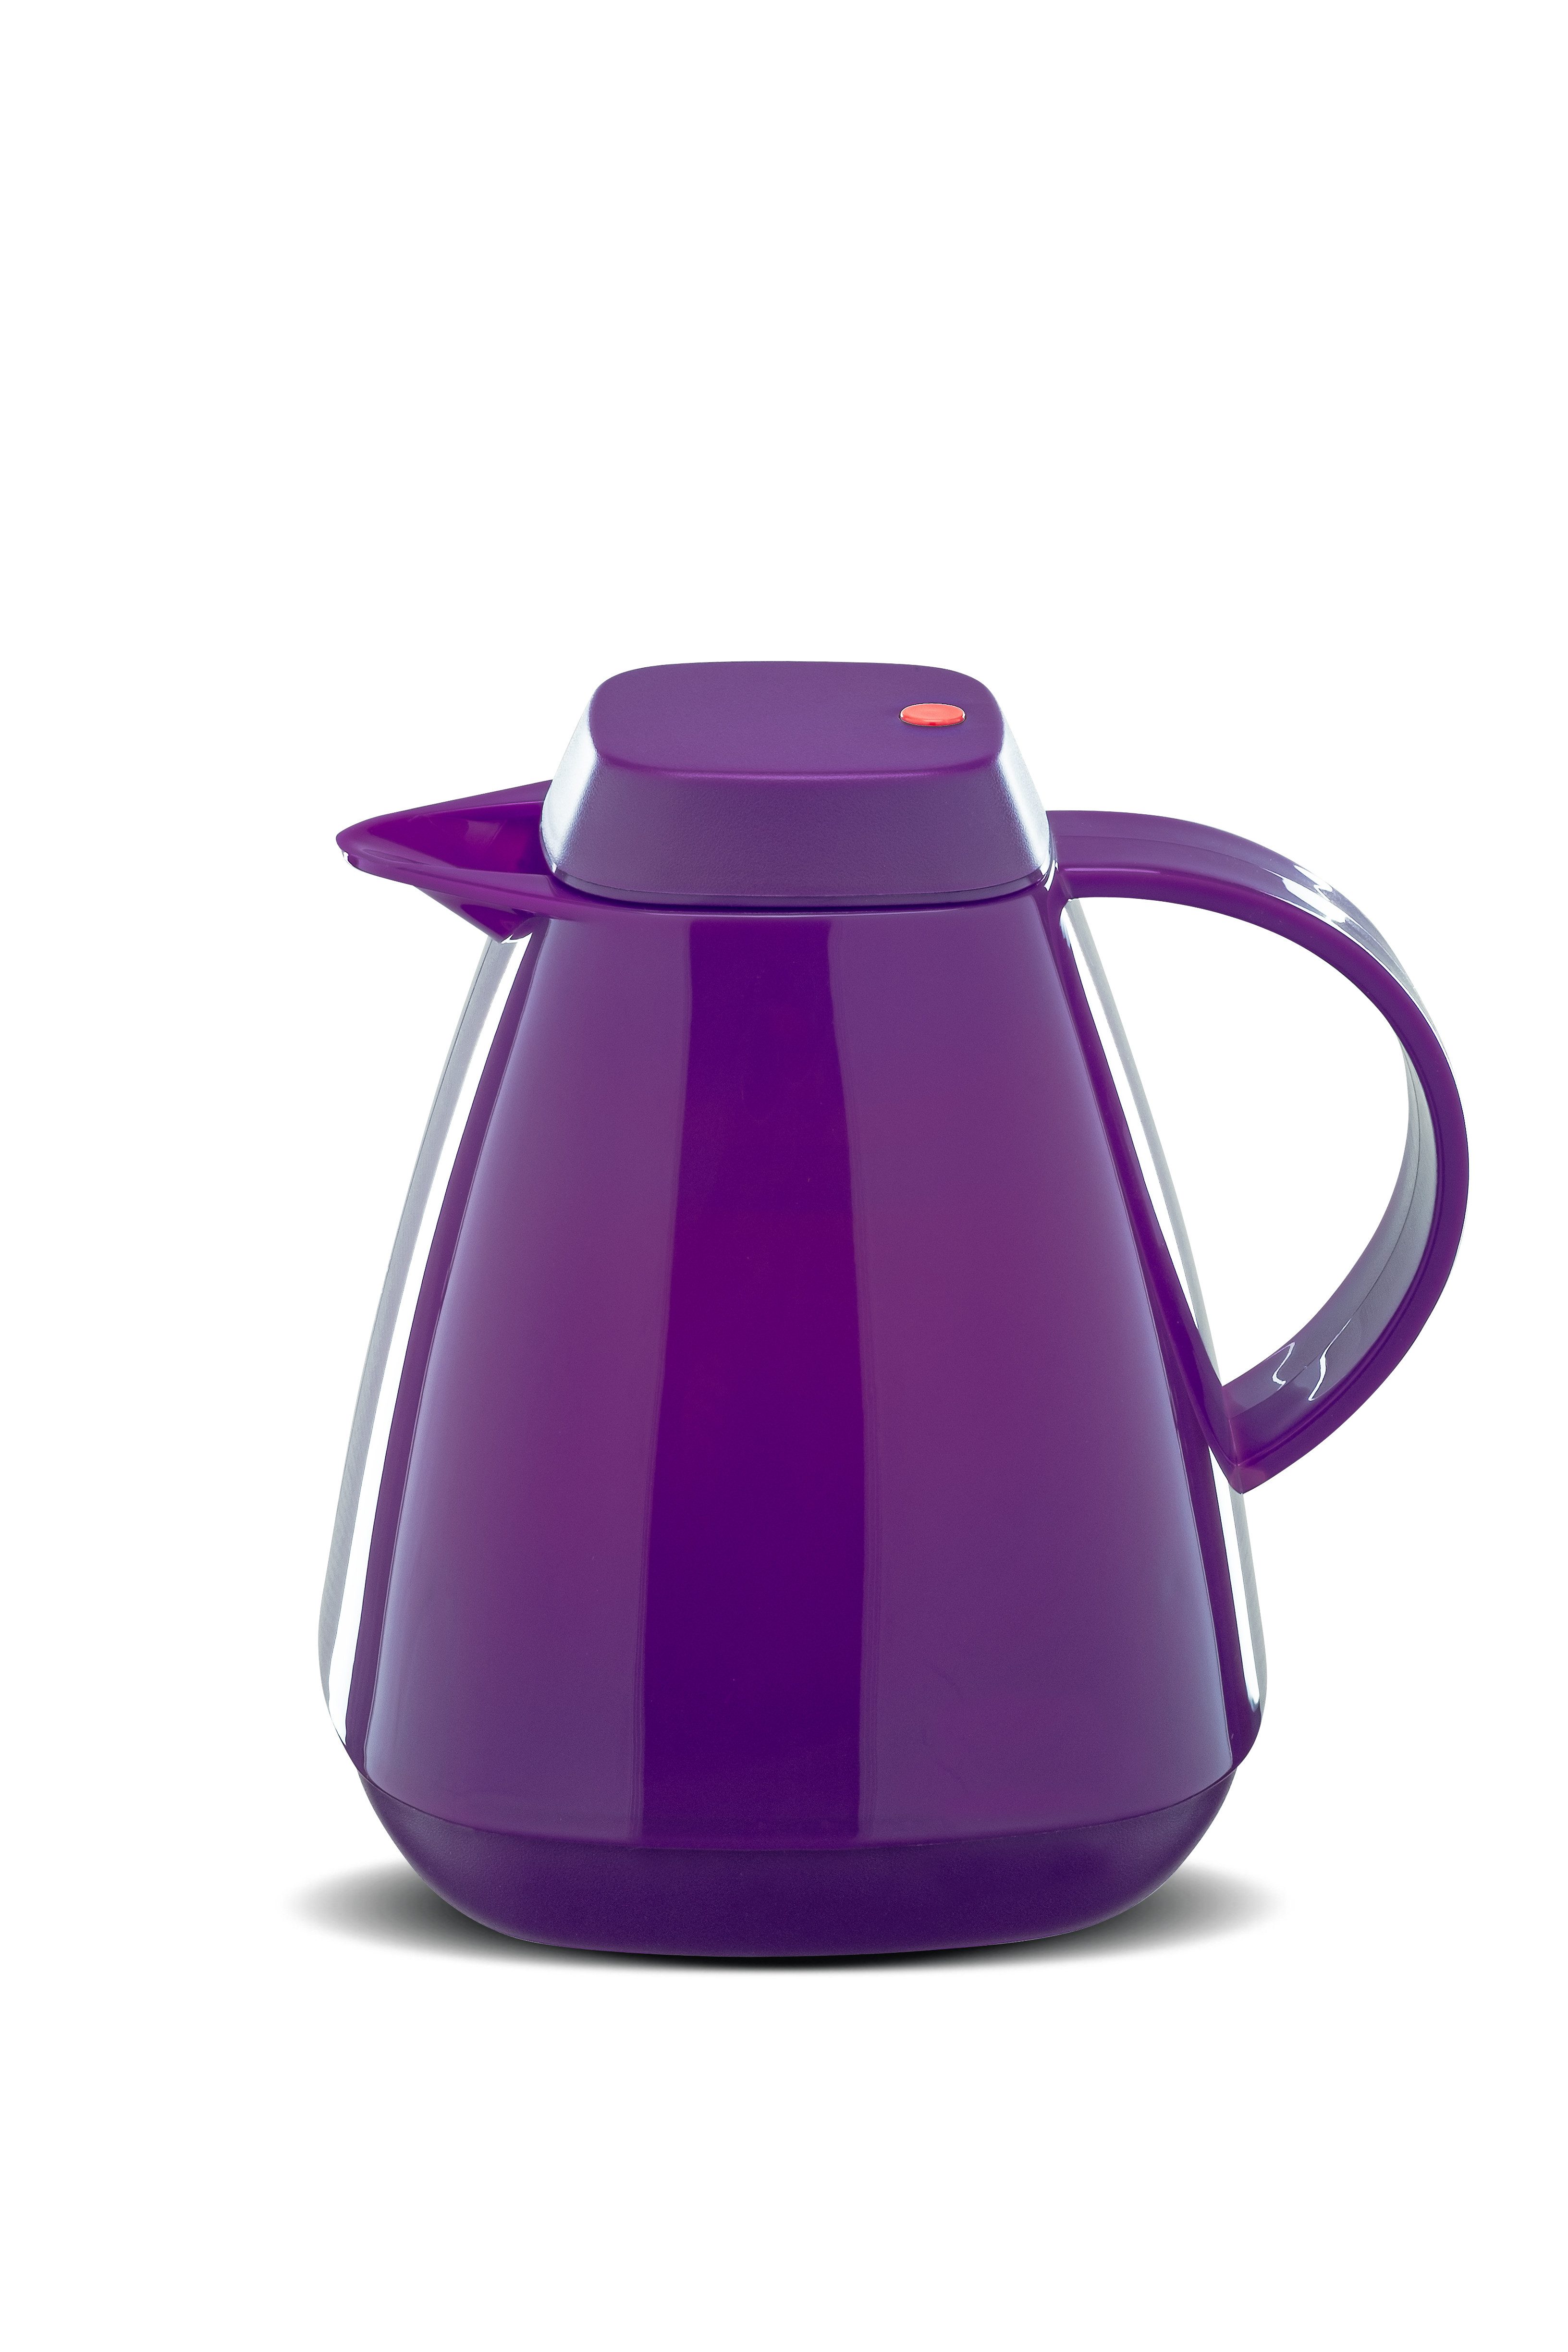 ROTPUNKT Isolierkanne 1,0 Liter 650 Glaseinsatz I hochwertig I langlebig I 24 Std warm, (Kaffeekanne I Teekanne), robust und auslaufsicher